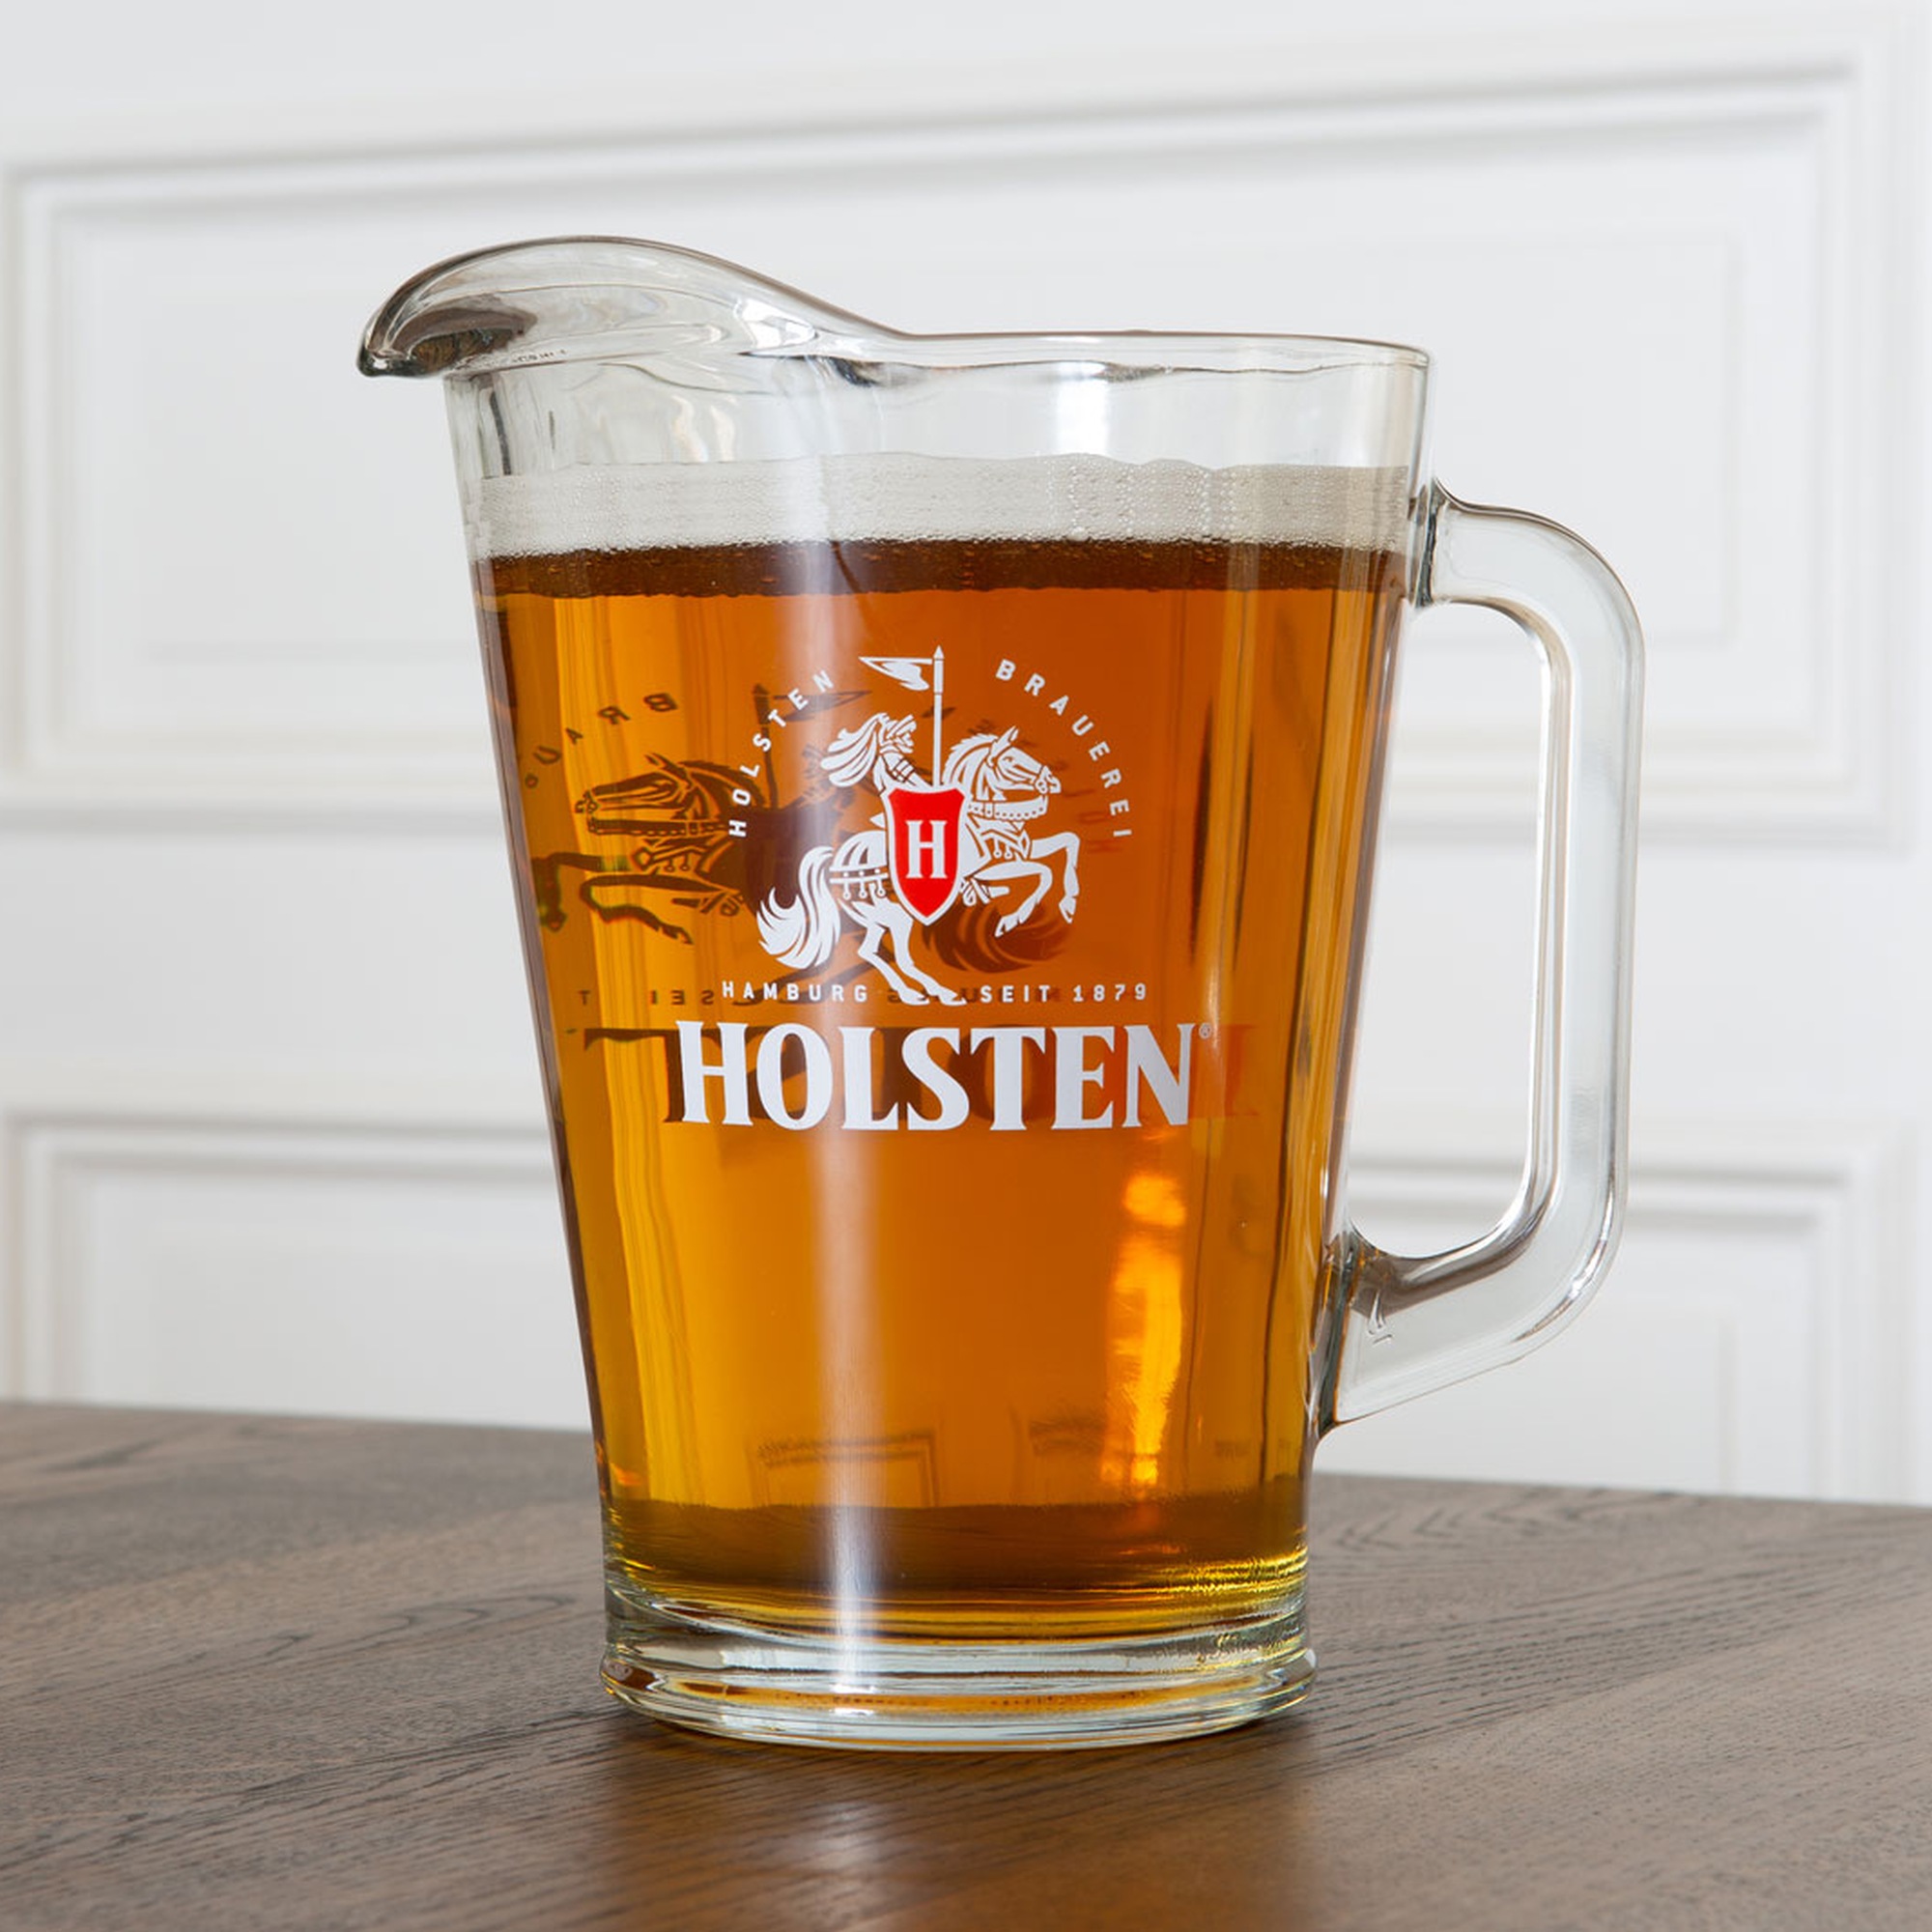 Holsten - Pitcher - 1,5 Liter